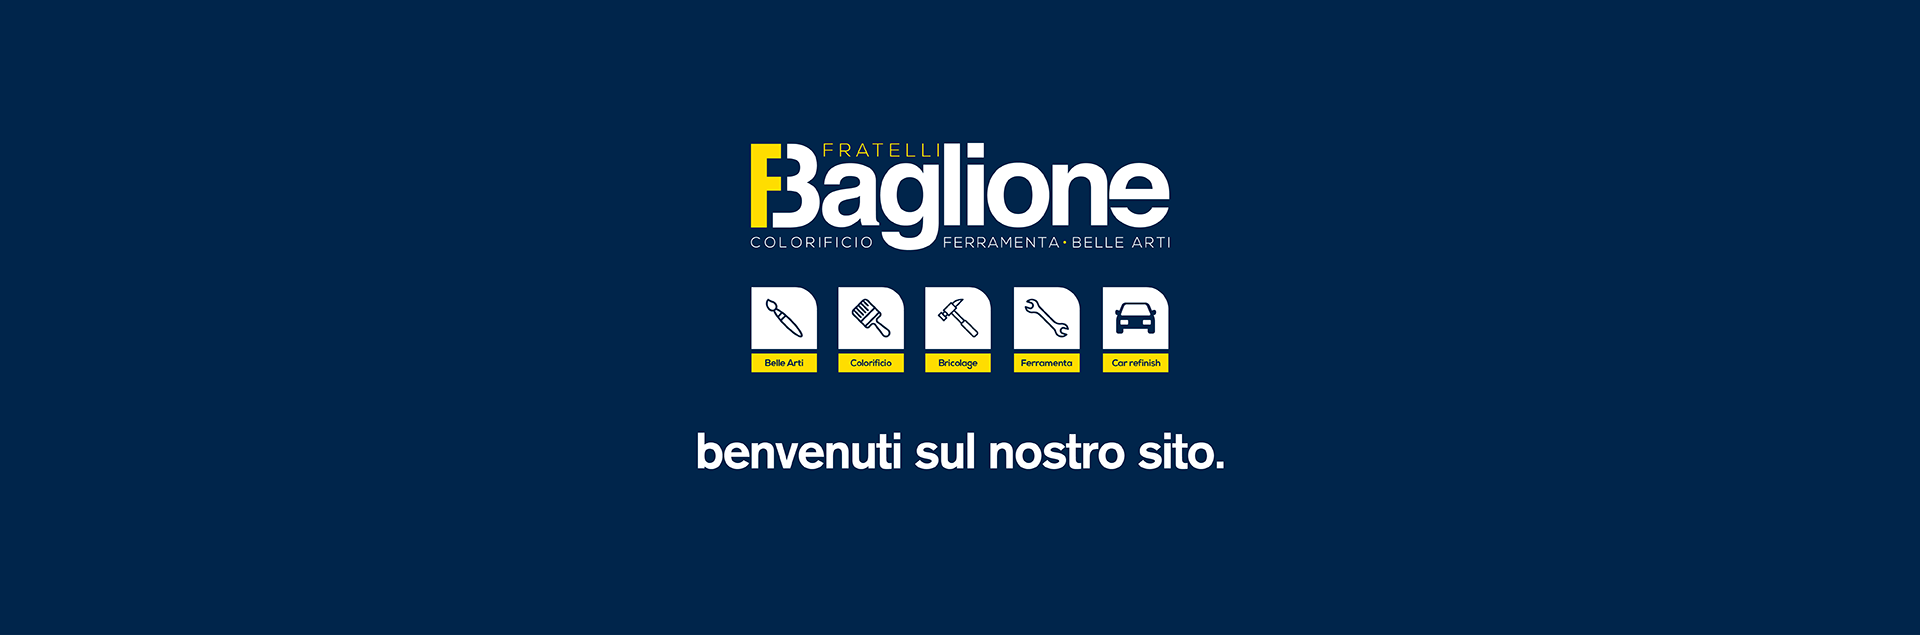 Benvenuti su Fratelli Baglione.com